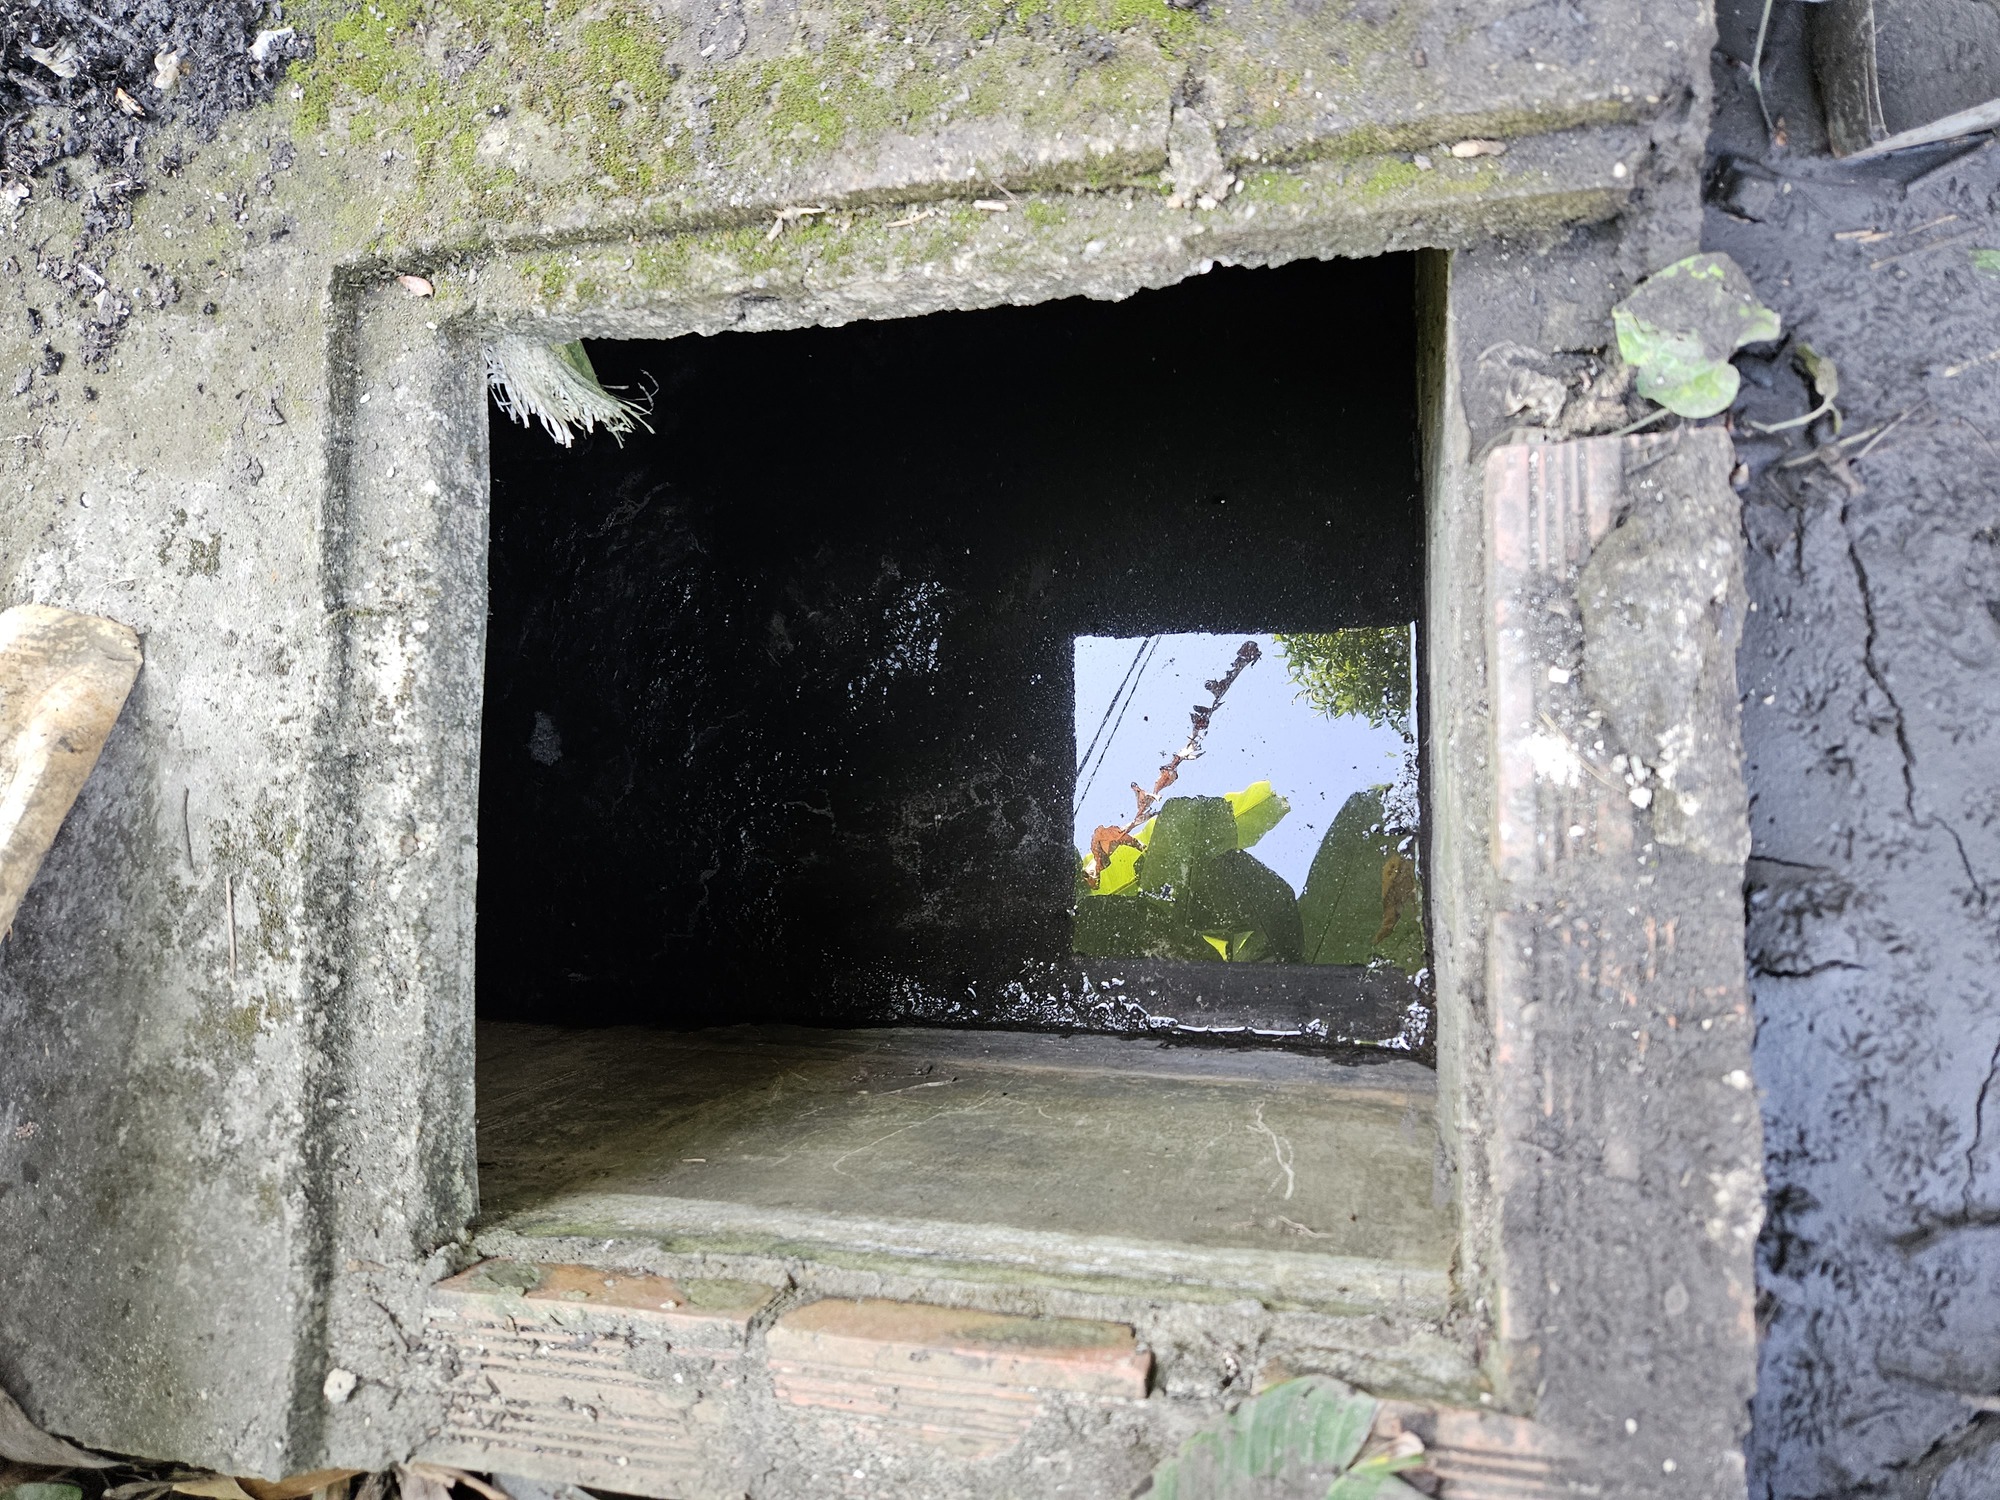 Cận cảnh bể phốt nhà vệ sinh nơi phát hiện bộ xương nữ giới ở Hải Phòng - Ảnh 2.